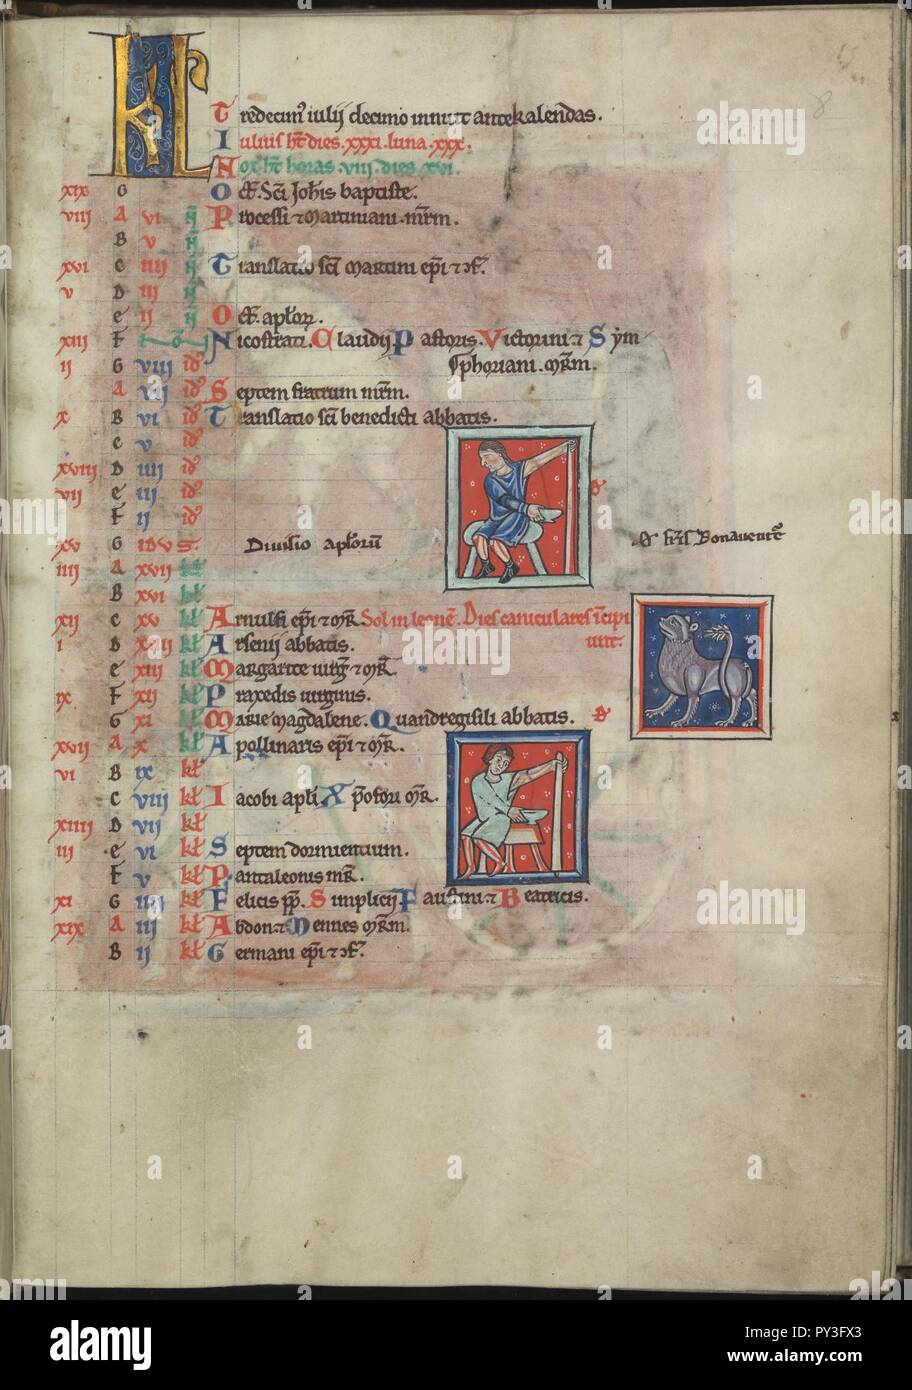 Kalender, Juli, zwei bloodlettings, dazwischen Leo-Psalter von Eleonore von Aquitanien (Ca. 1185) - KB 76 F13, Folsäure 008 r. Stockfoto